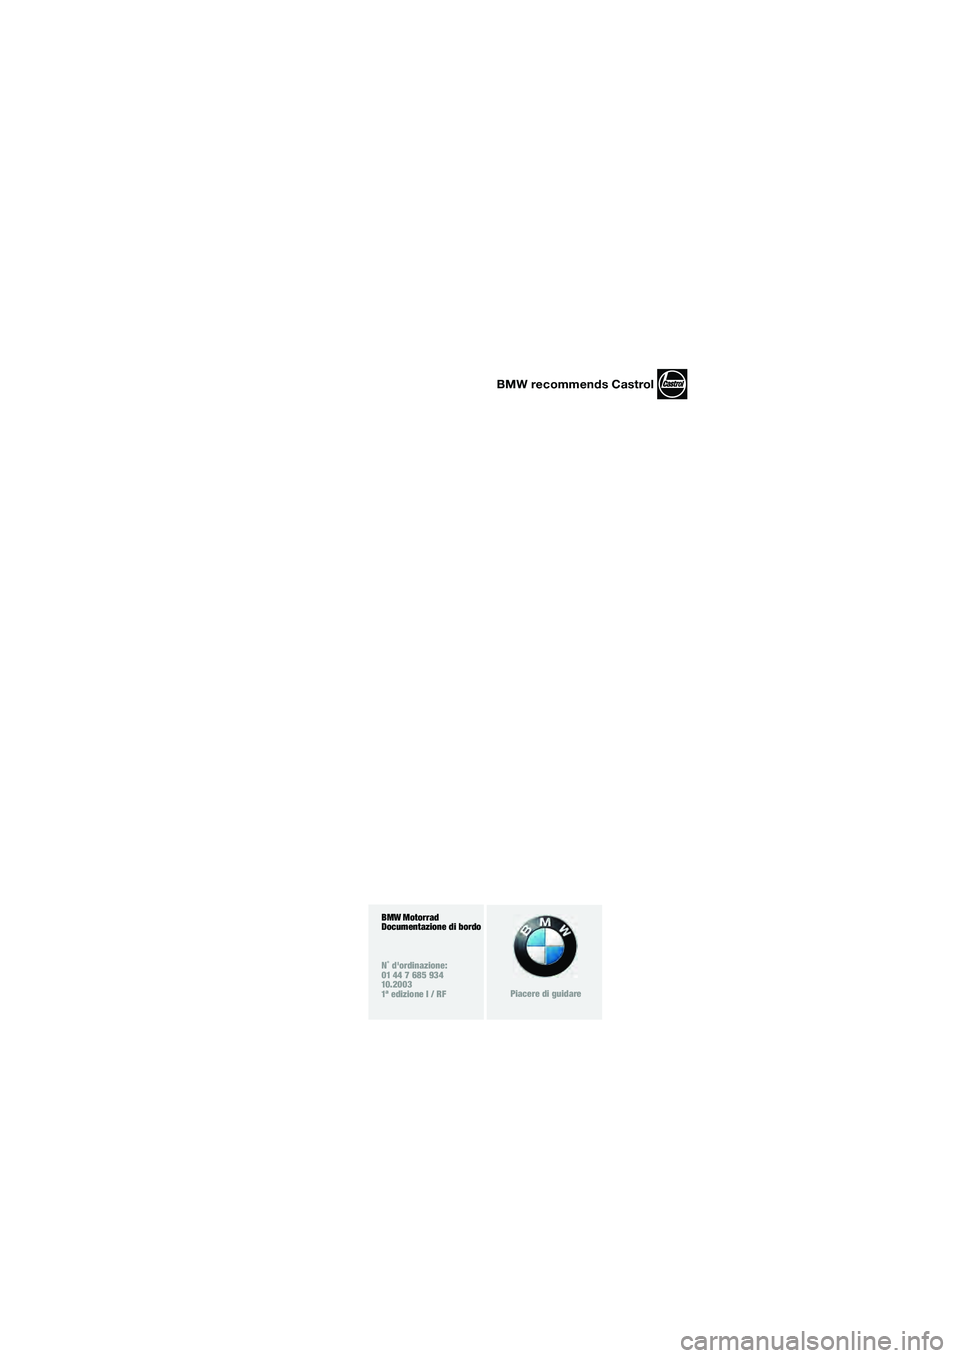 BMW MOTORRAD F 650 GS DAKAR 2003  Libretto di uso e manutenzione (in Italian) 1
BMW recommends Castrol
BMW Motorrad
Documentazione di bordo
N˚ dordinazione:
01 44 7 685 934
10.2003
1ª edizione I / RF
Piacere di guidare
10R13bki4.book  Seite 3  Montag, 22. September 2003  3:4